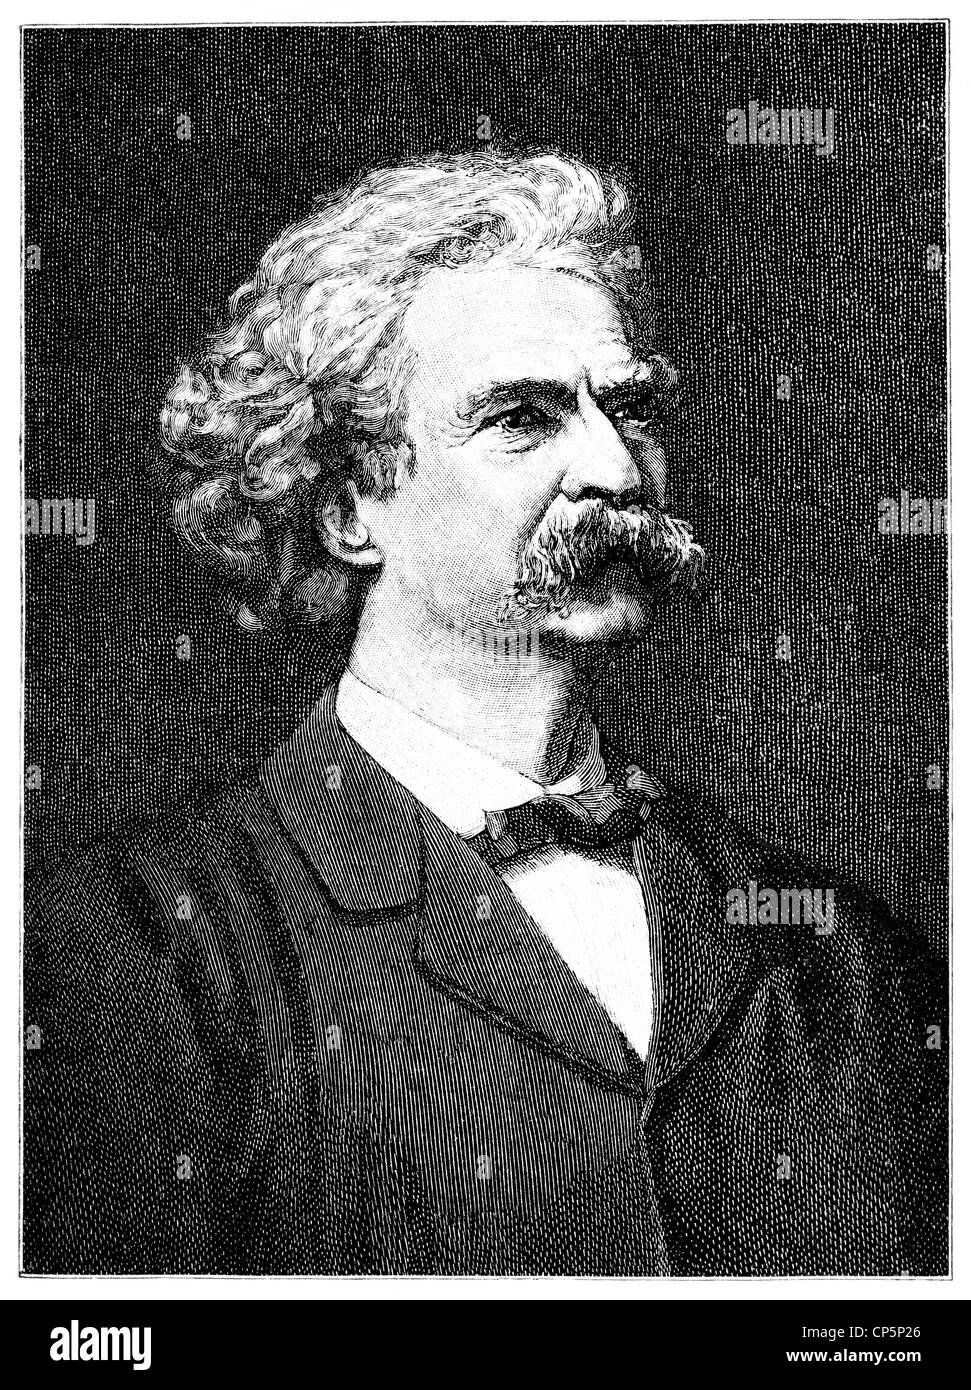 Destouches ou Mark Twain, 1835 - 1910, un écrivain américain, auteur de Les Aventures de Tom Sawyer et Huckleberry Banque D'Images